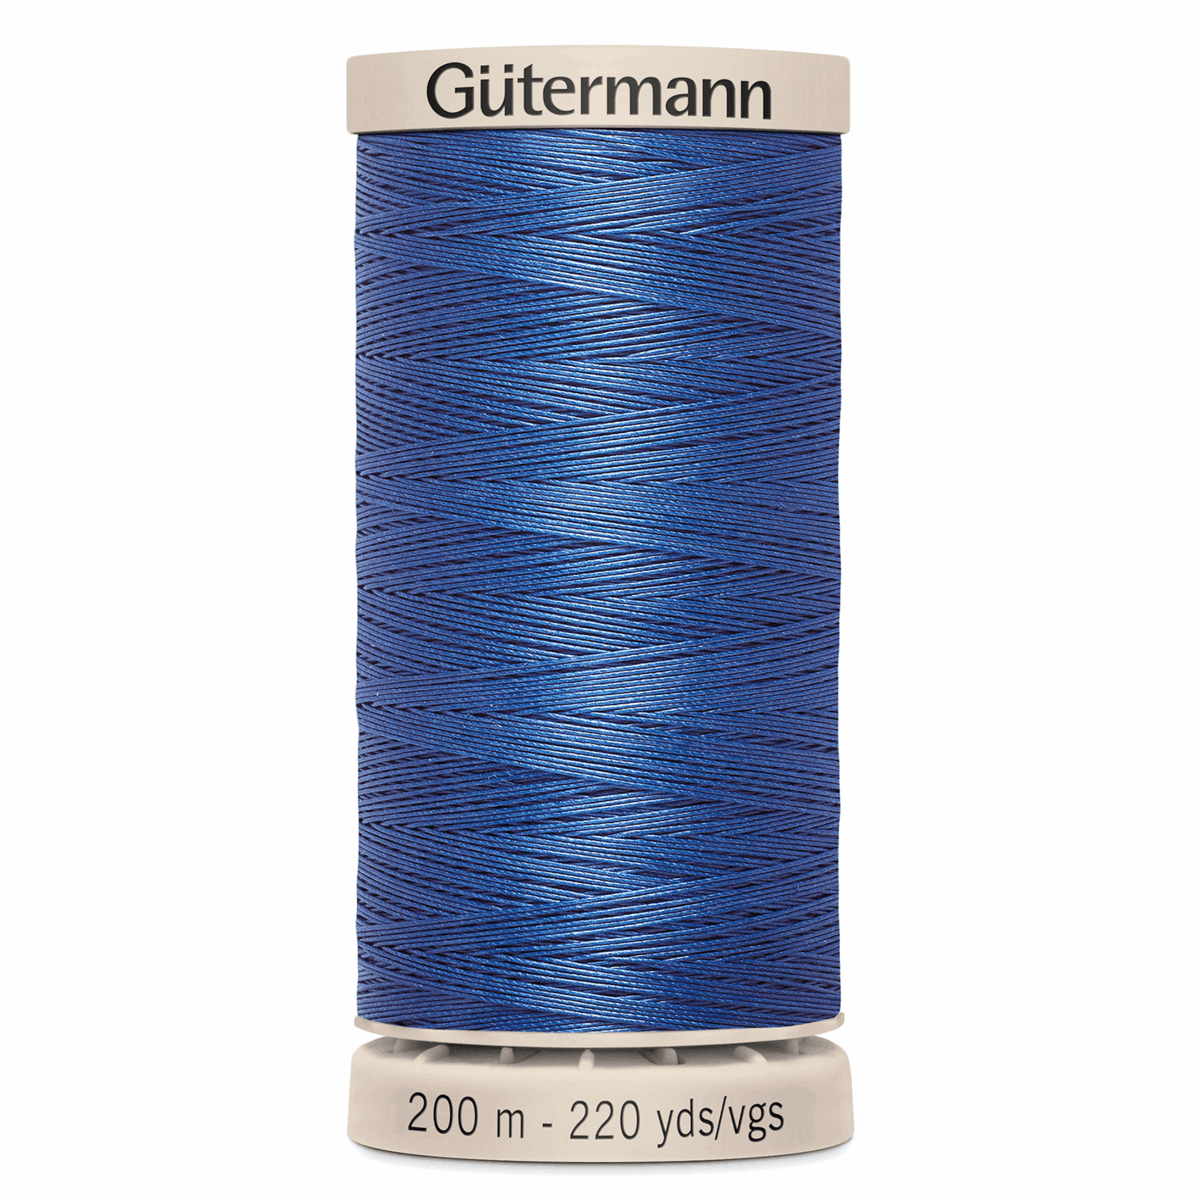 Gutermann Quilting Thread 200m - Colour 5133